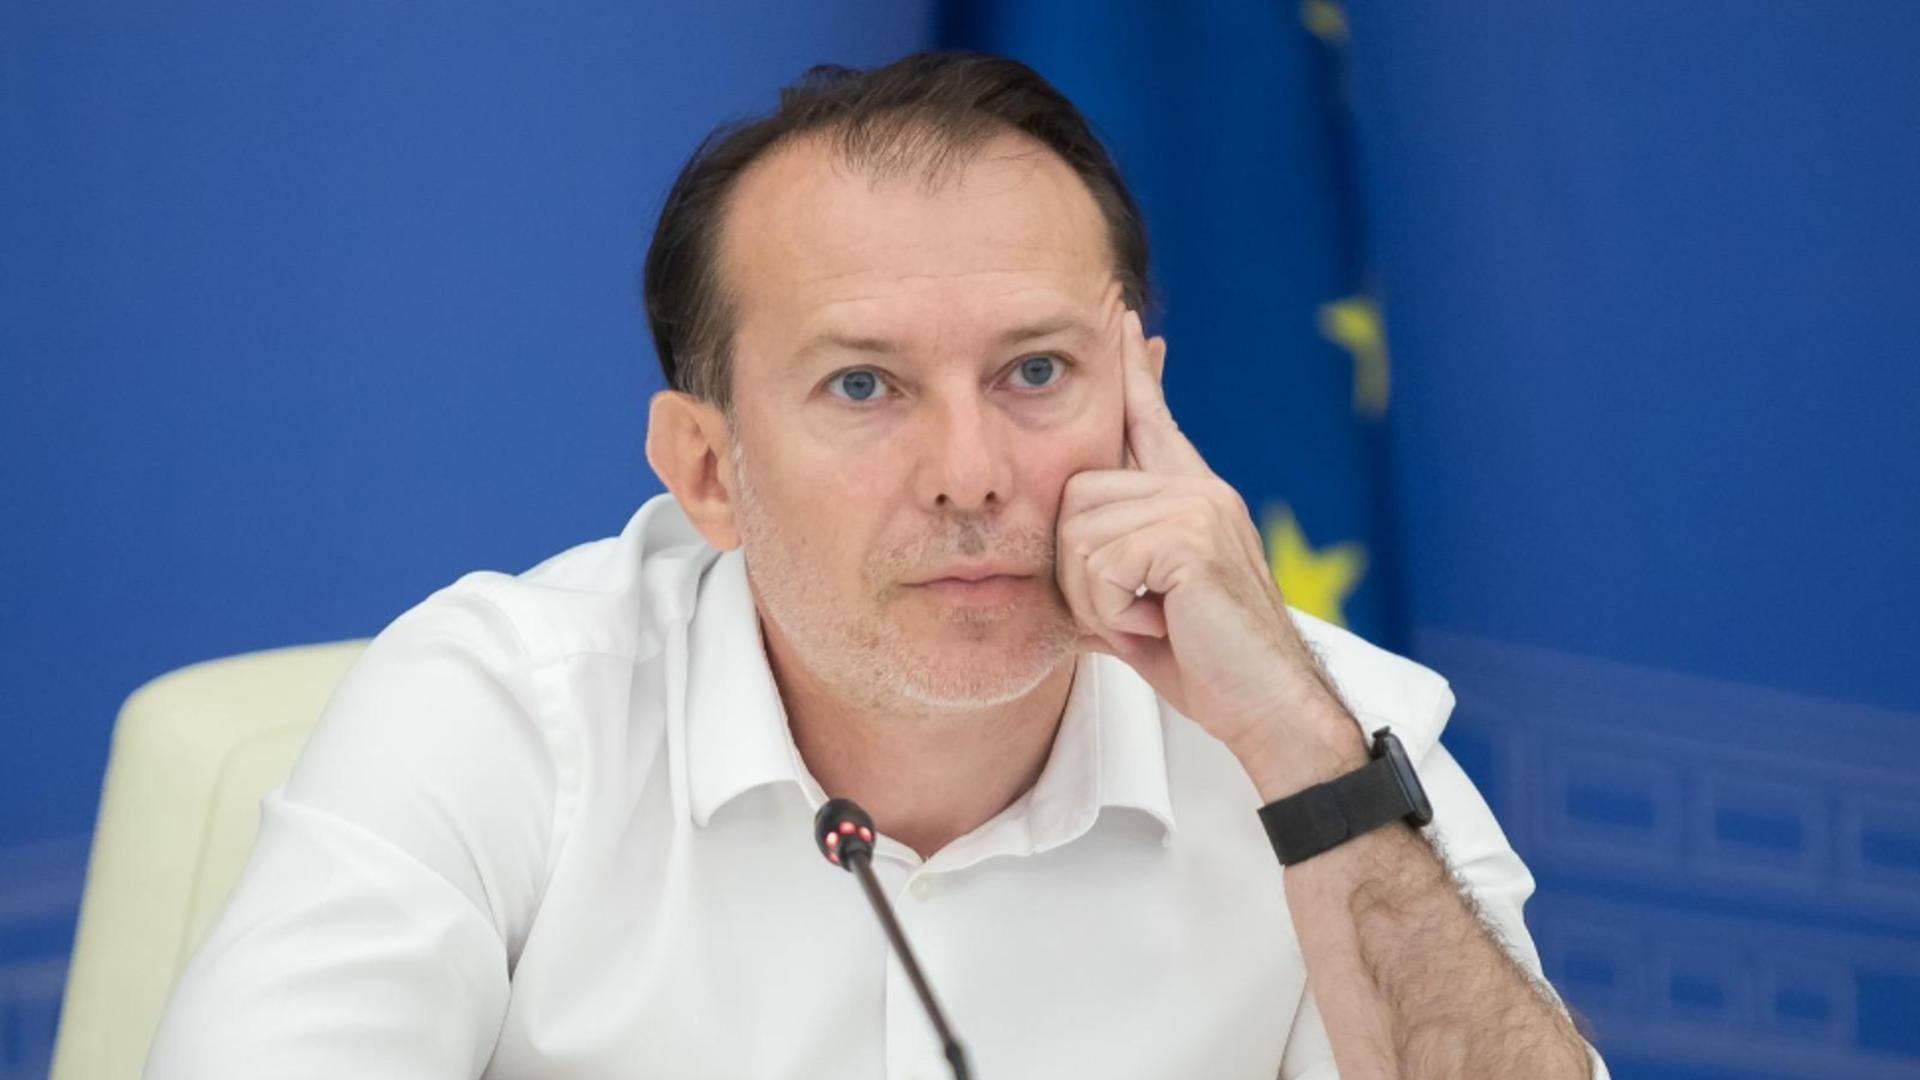  Florin Cîţu, înainte de demisia în bloc a miniştrilor USR PLUS: Sunt dispus să continuăm dialogul